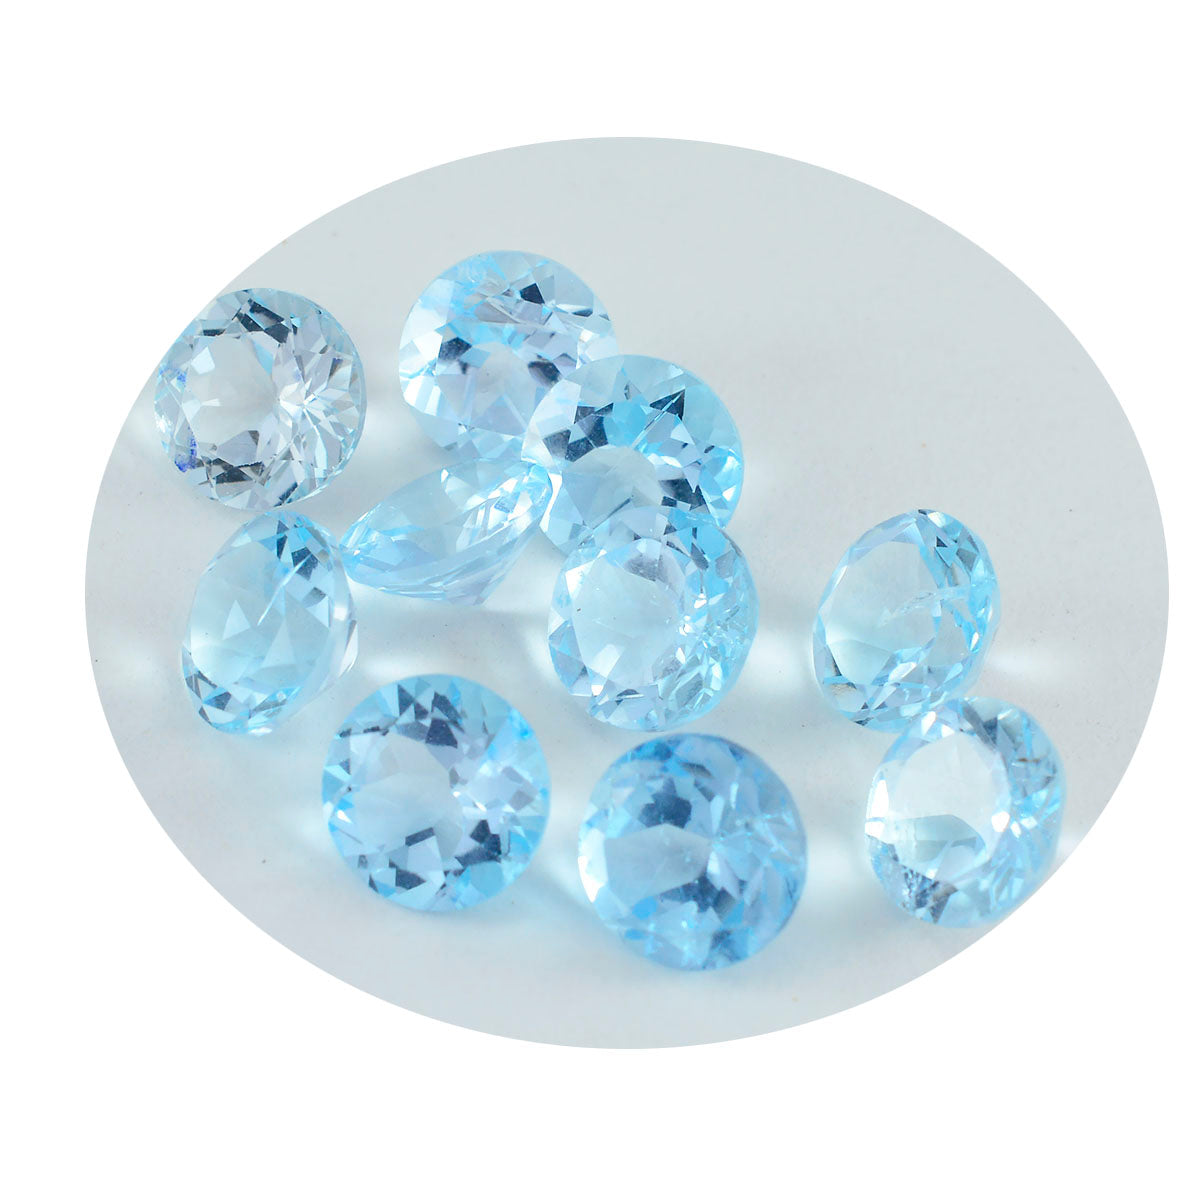 Riyogems 1 Stück natürlicher blauer Topas, facettiert, 4 x 4 mm, runde Form, süße Qualität, lose Edelsteine